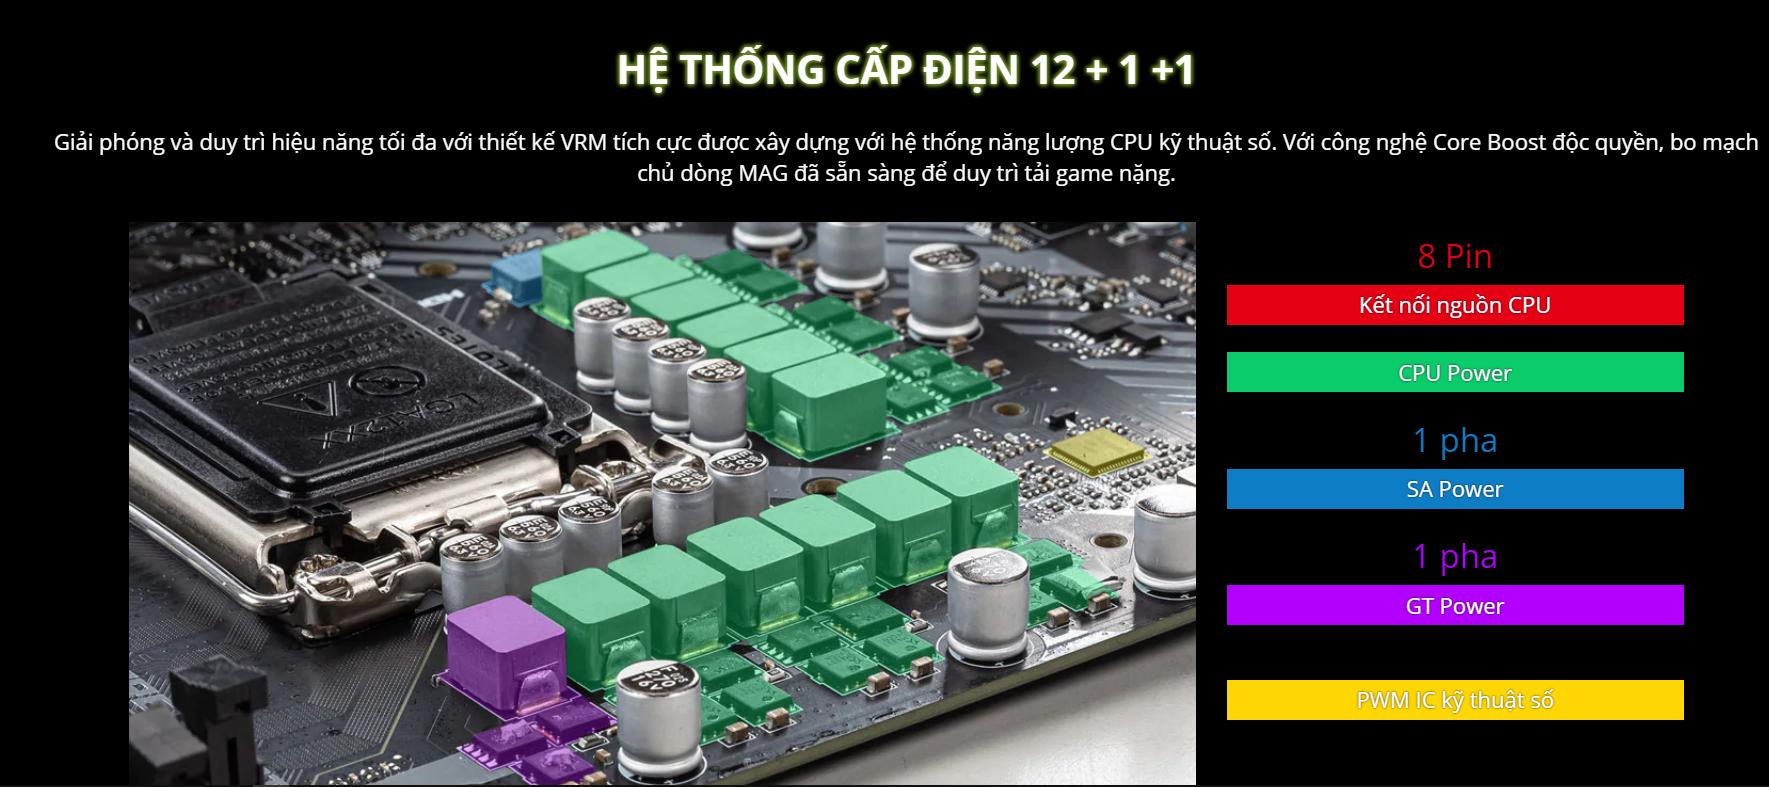 Mainboard MSI MAG B460M MORTAR (Intel B460, Socket 1200, m-ATX, 4 khe RAM DDR4) 7